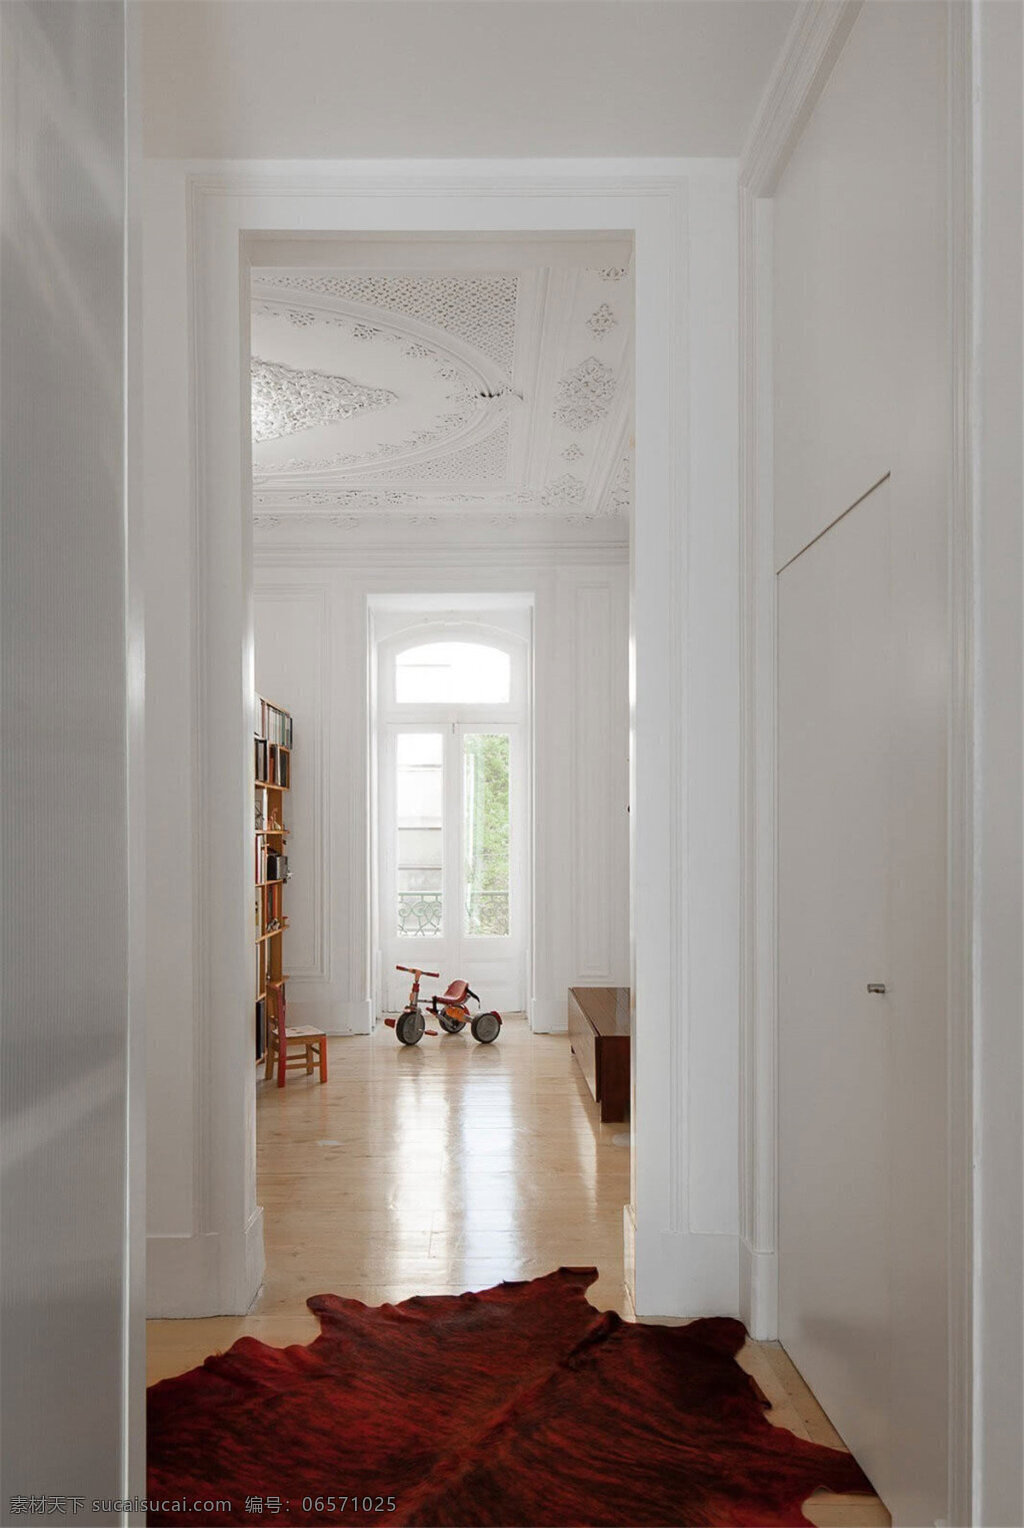 白色 调 玄关 走廊 效果图 白色调 木地板 室内背景 室内设计